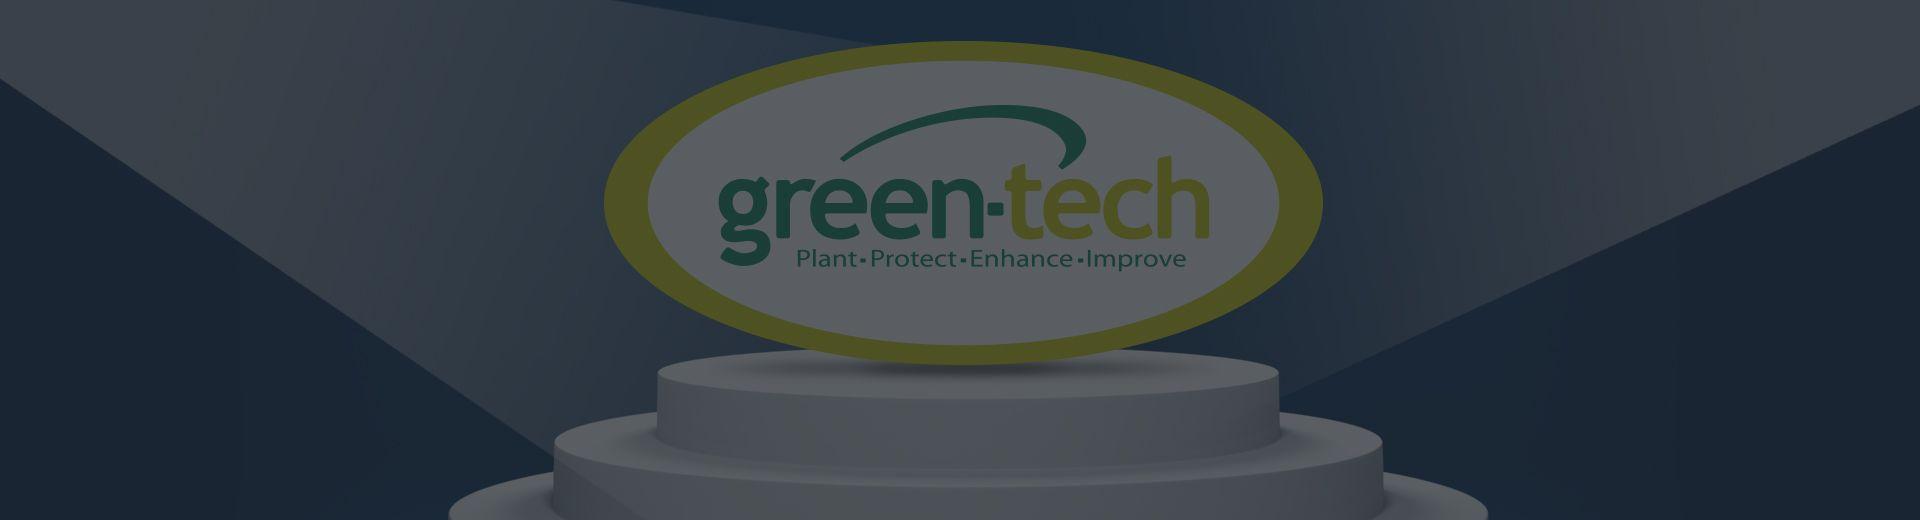 Green Tech Logo - Landscaping Suppliers - Wholesale Garden Supplies | Green-tech